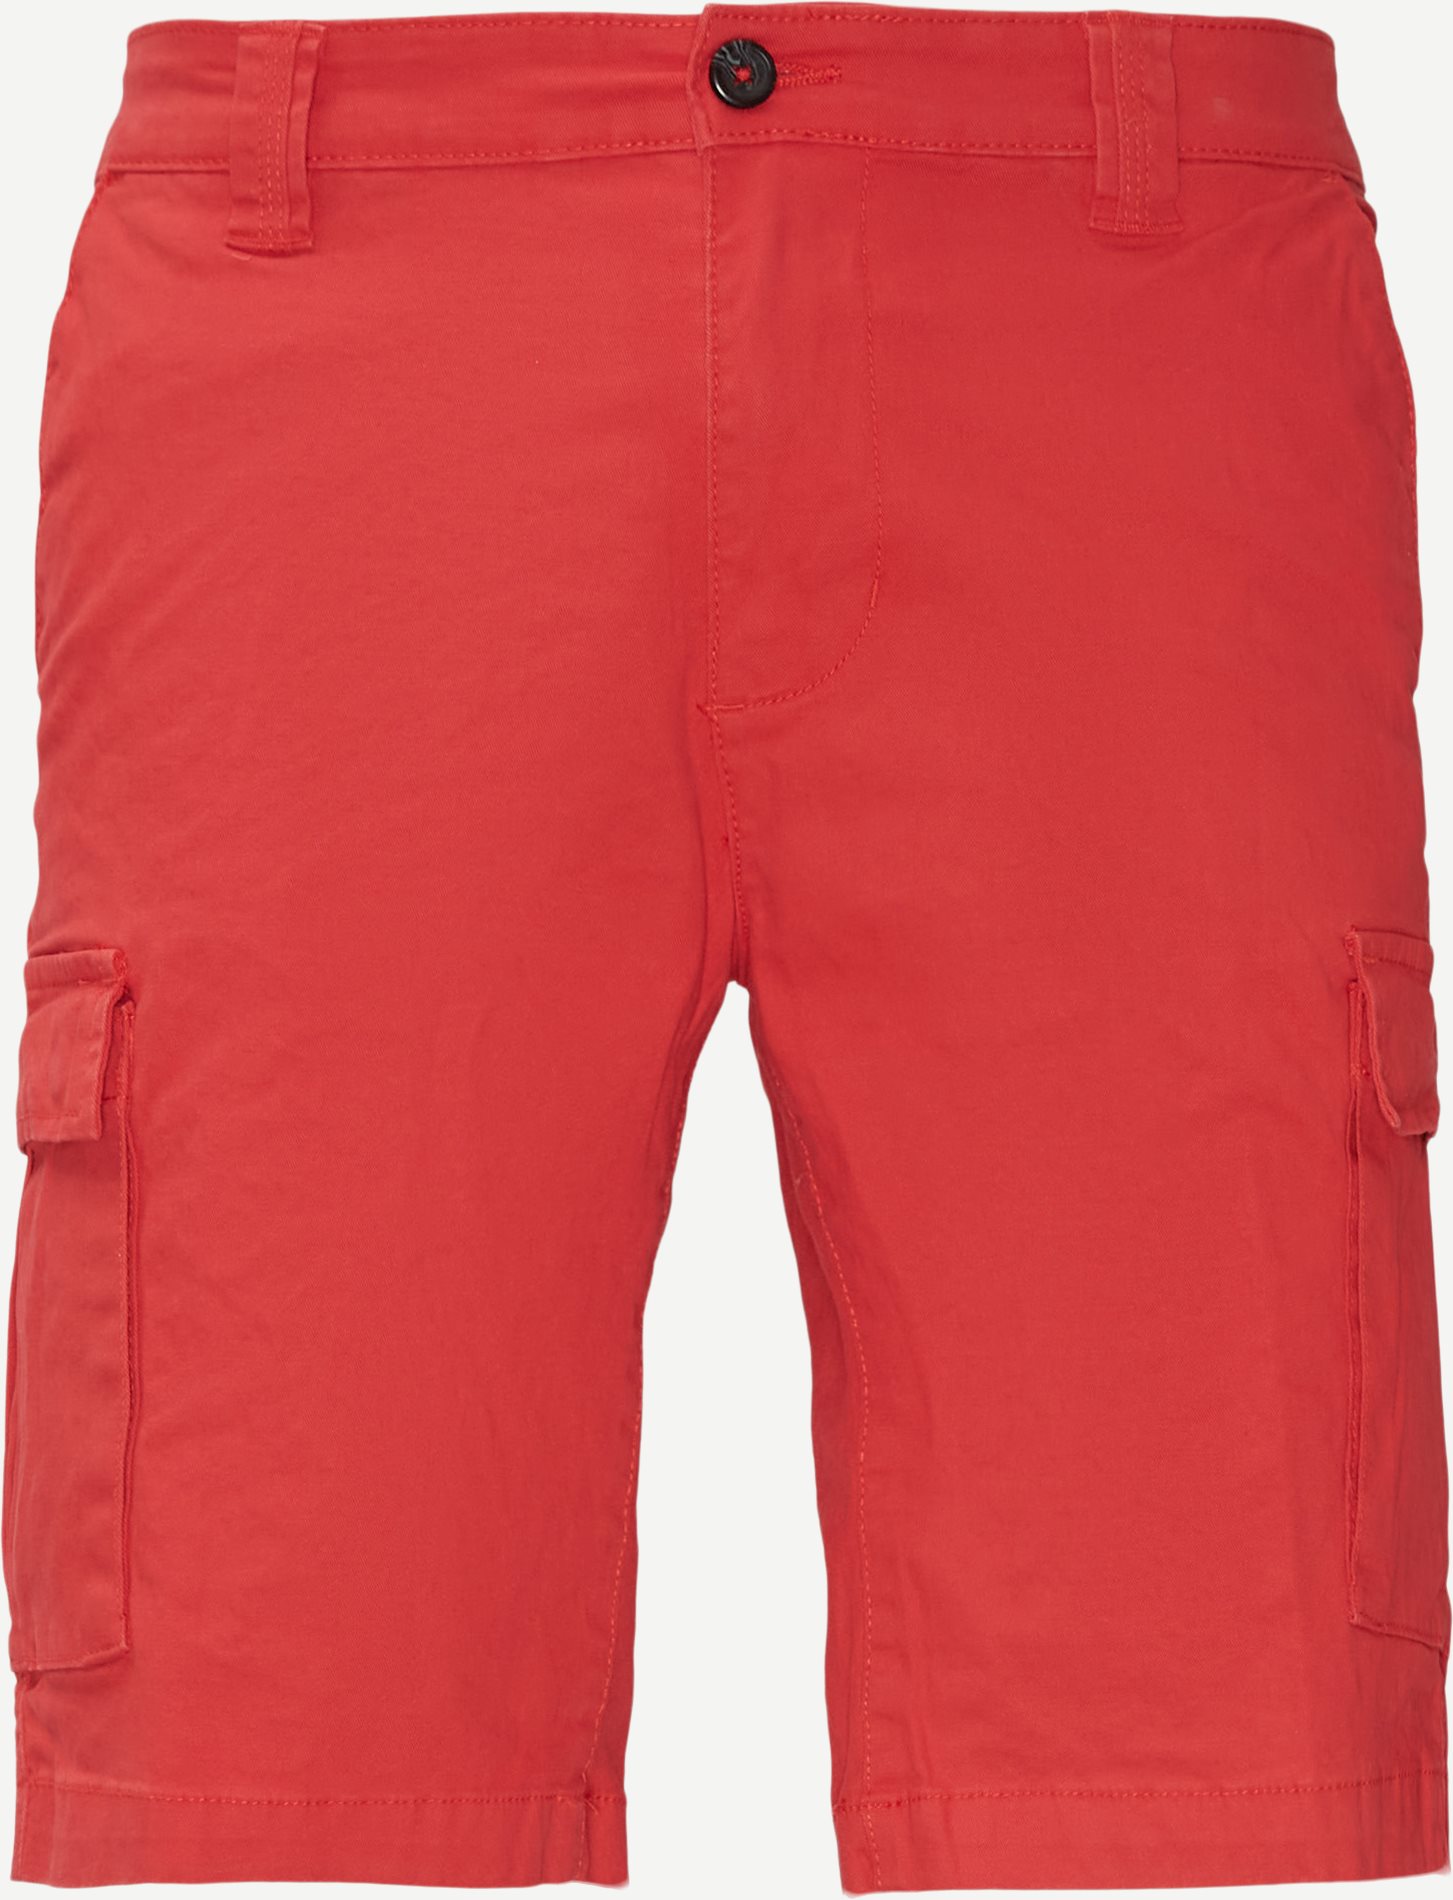 Shorts - Regular fit - Röd